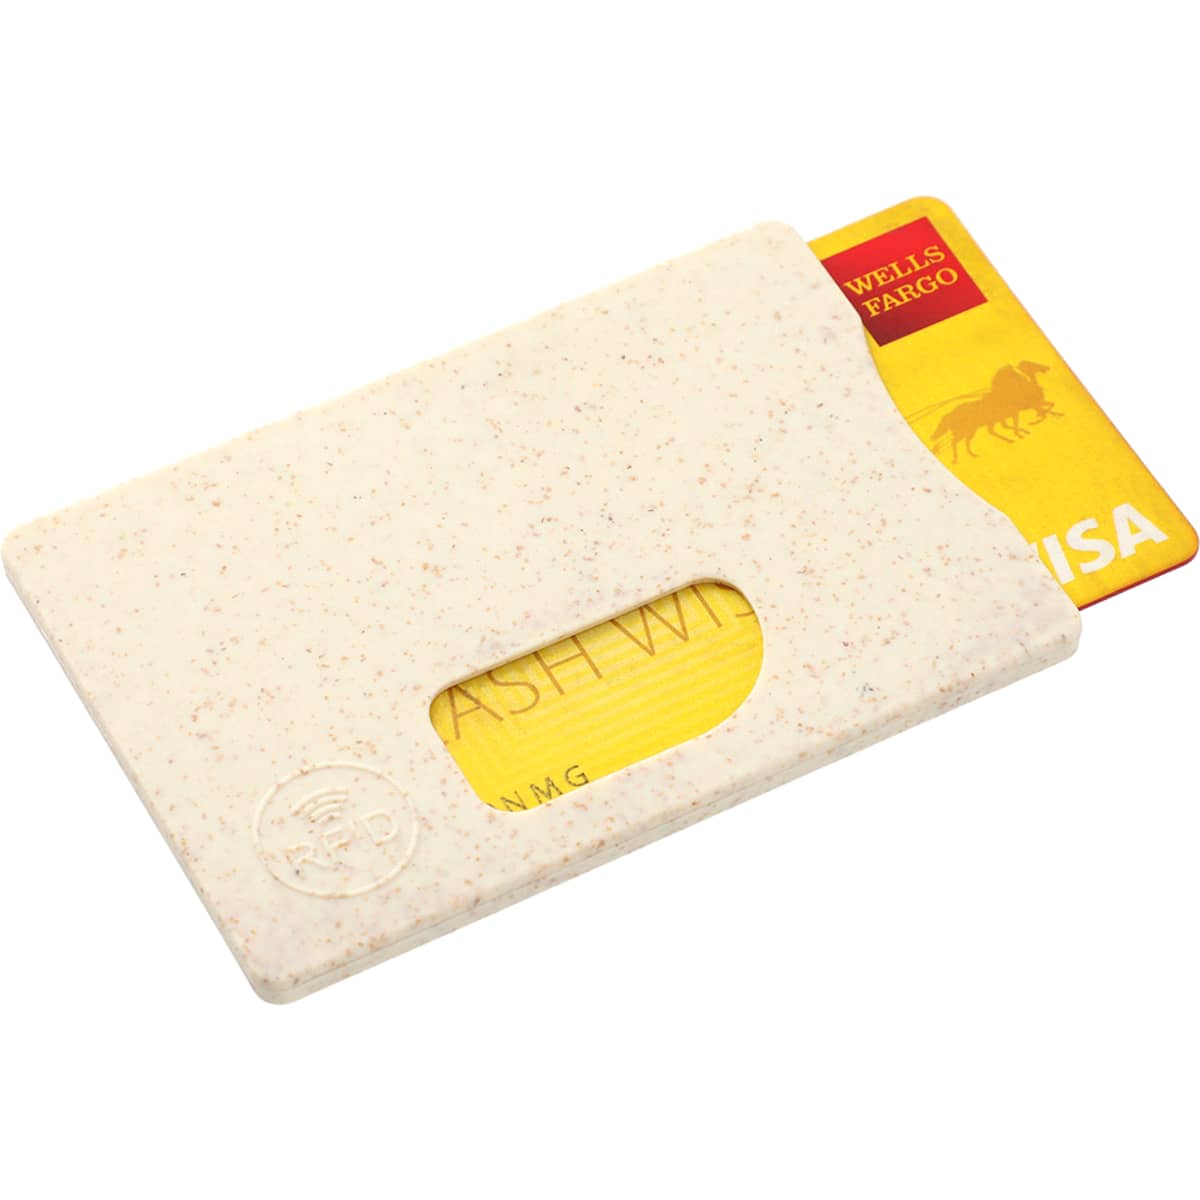 Wheat Straw RFID Card holder